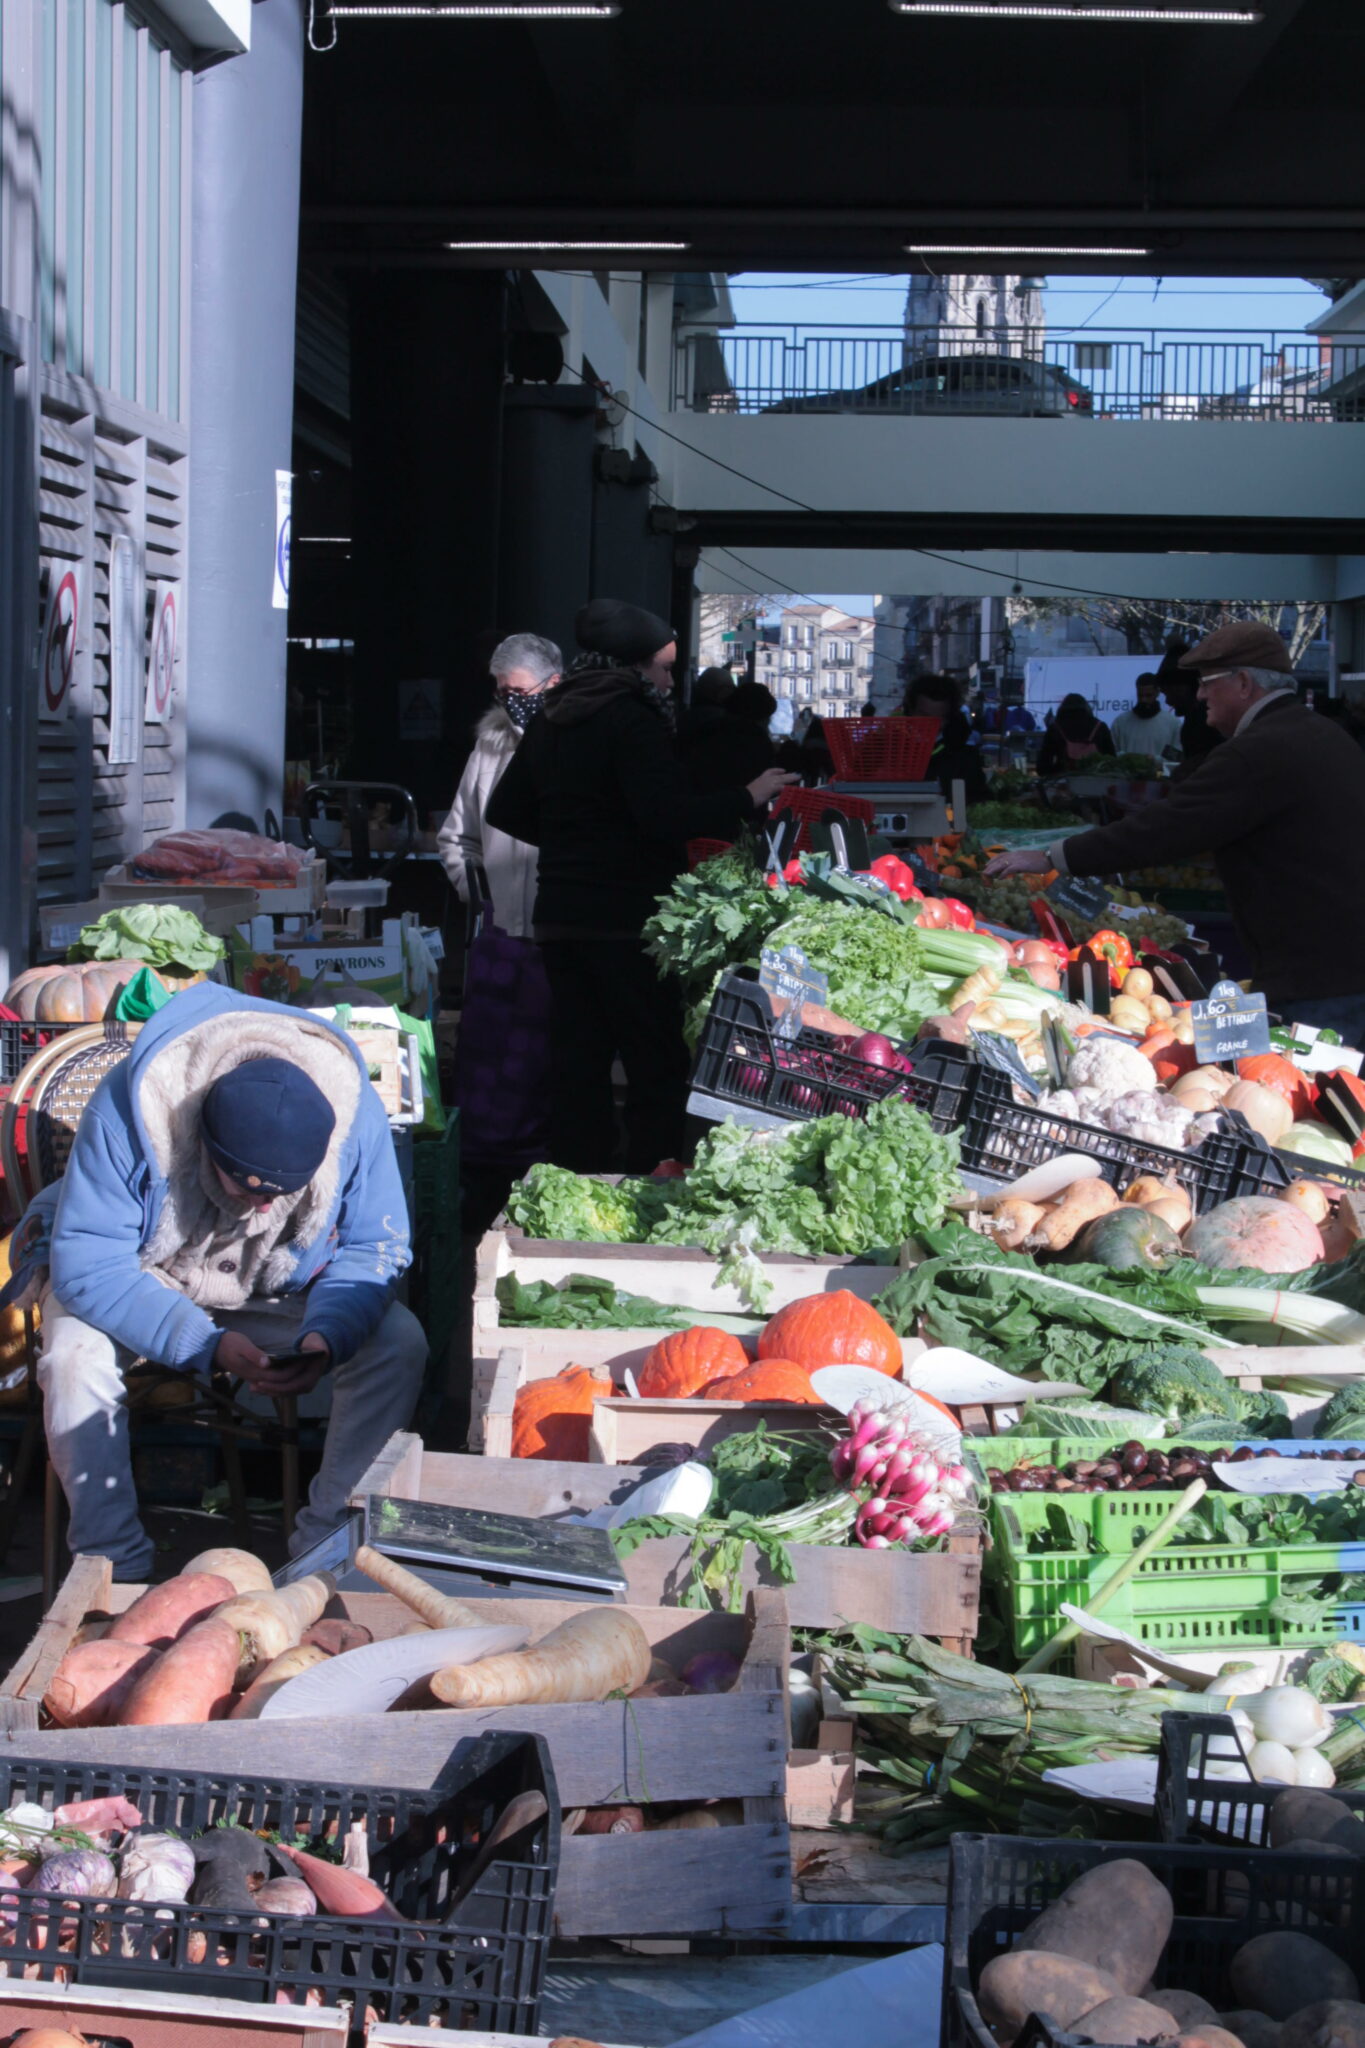 Le lendemain, mercredi 8 décembre, à la même heure. Dans les halls du marché des Capucins, c’est l’effervescence. A la recherche de bonnes affaires, de nombreuses personnes affluent devant les étals débordants de fruits et de légumes, aussi bien locaux qu’exotiques.